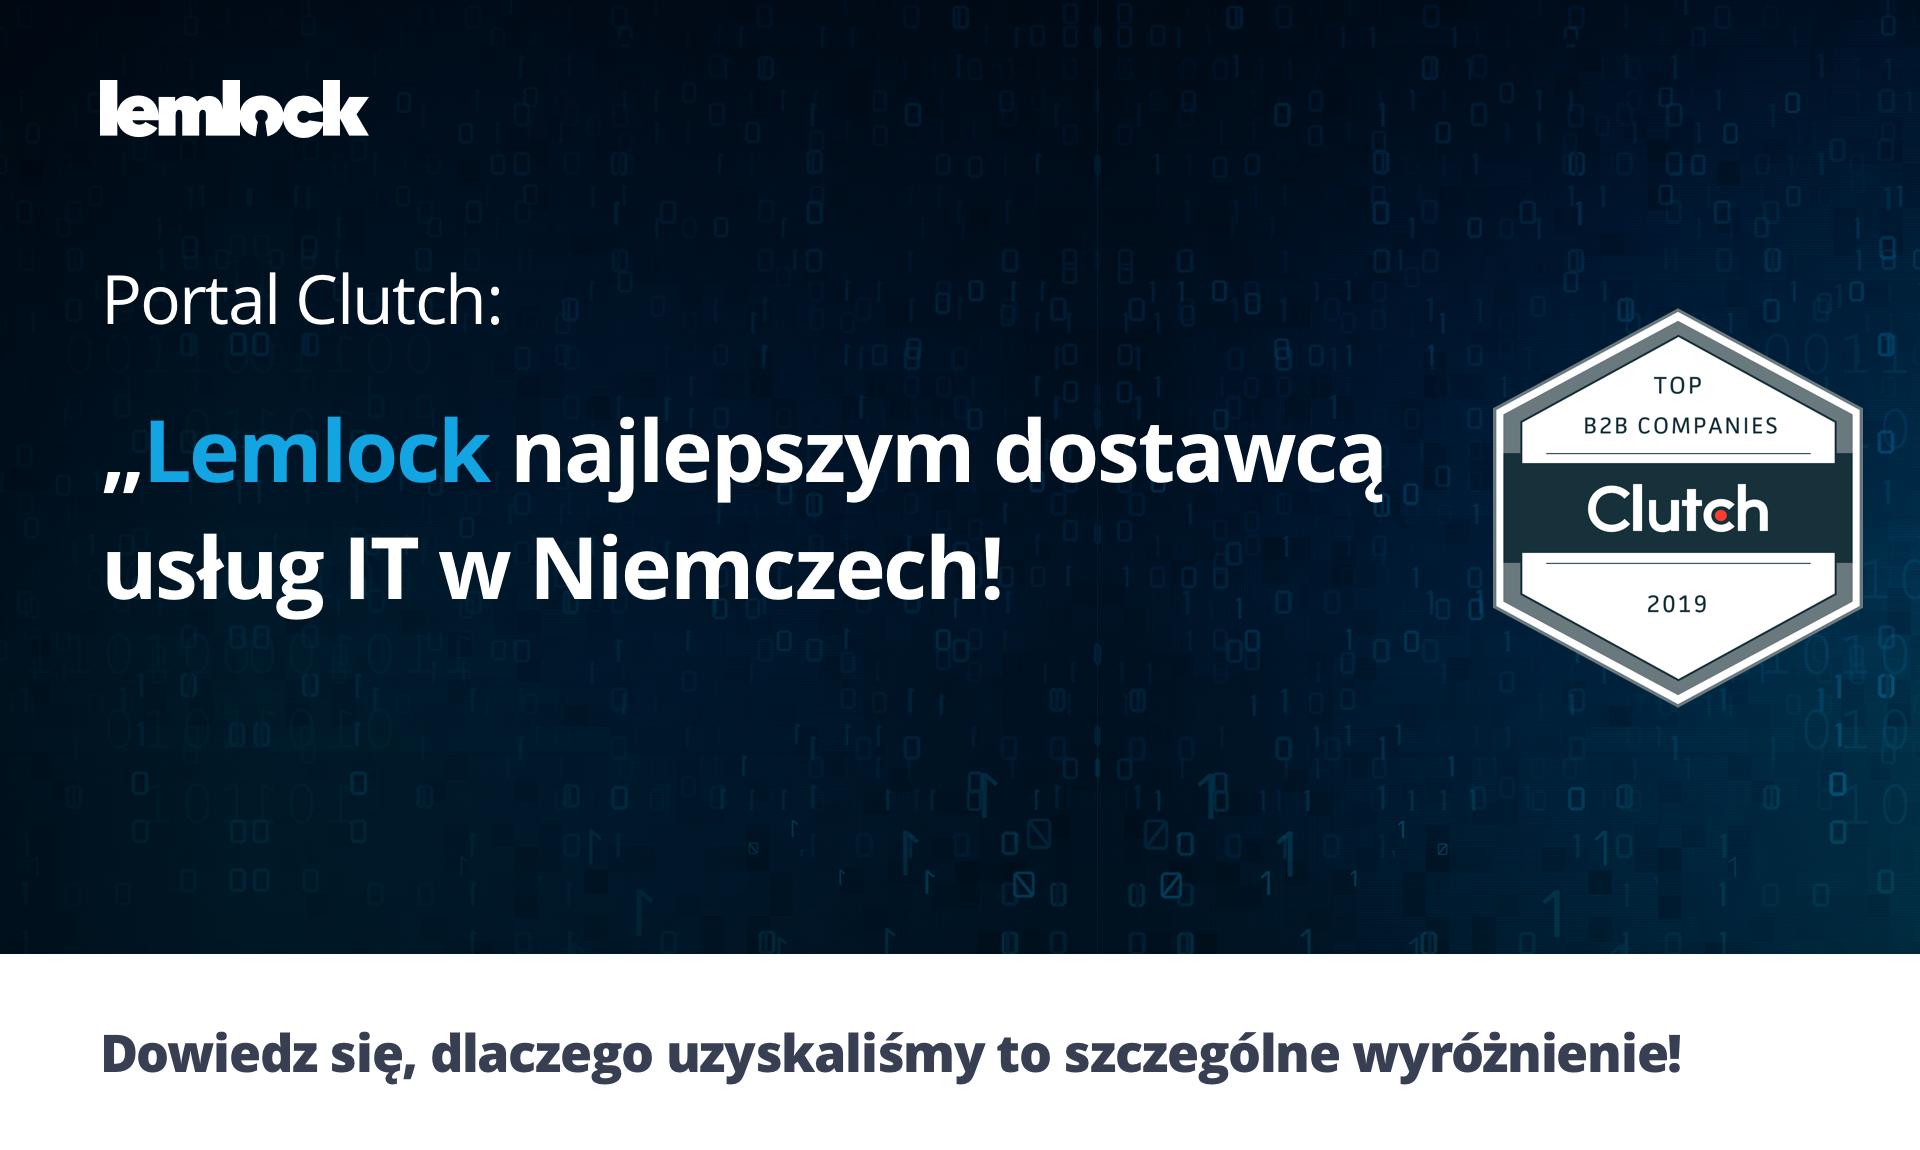 Artykuł. Lemlock uznany przez portal Clutch za najlepszego dostawcę usług IT w Niemczech